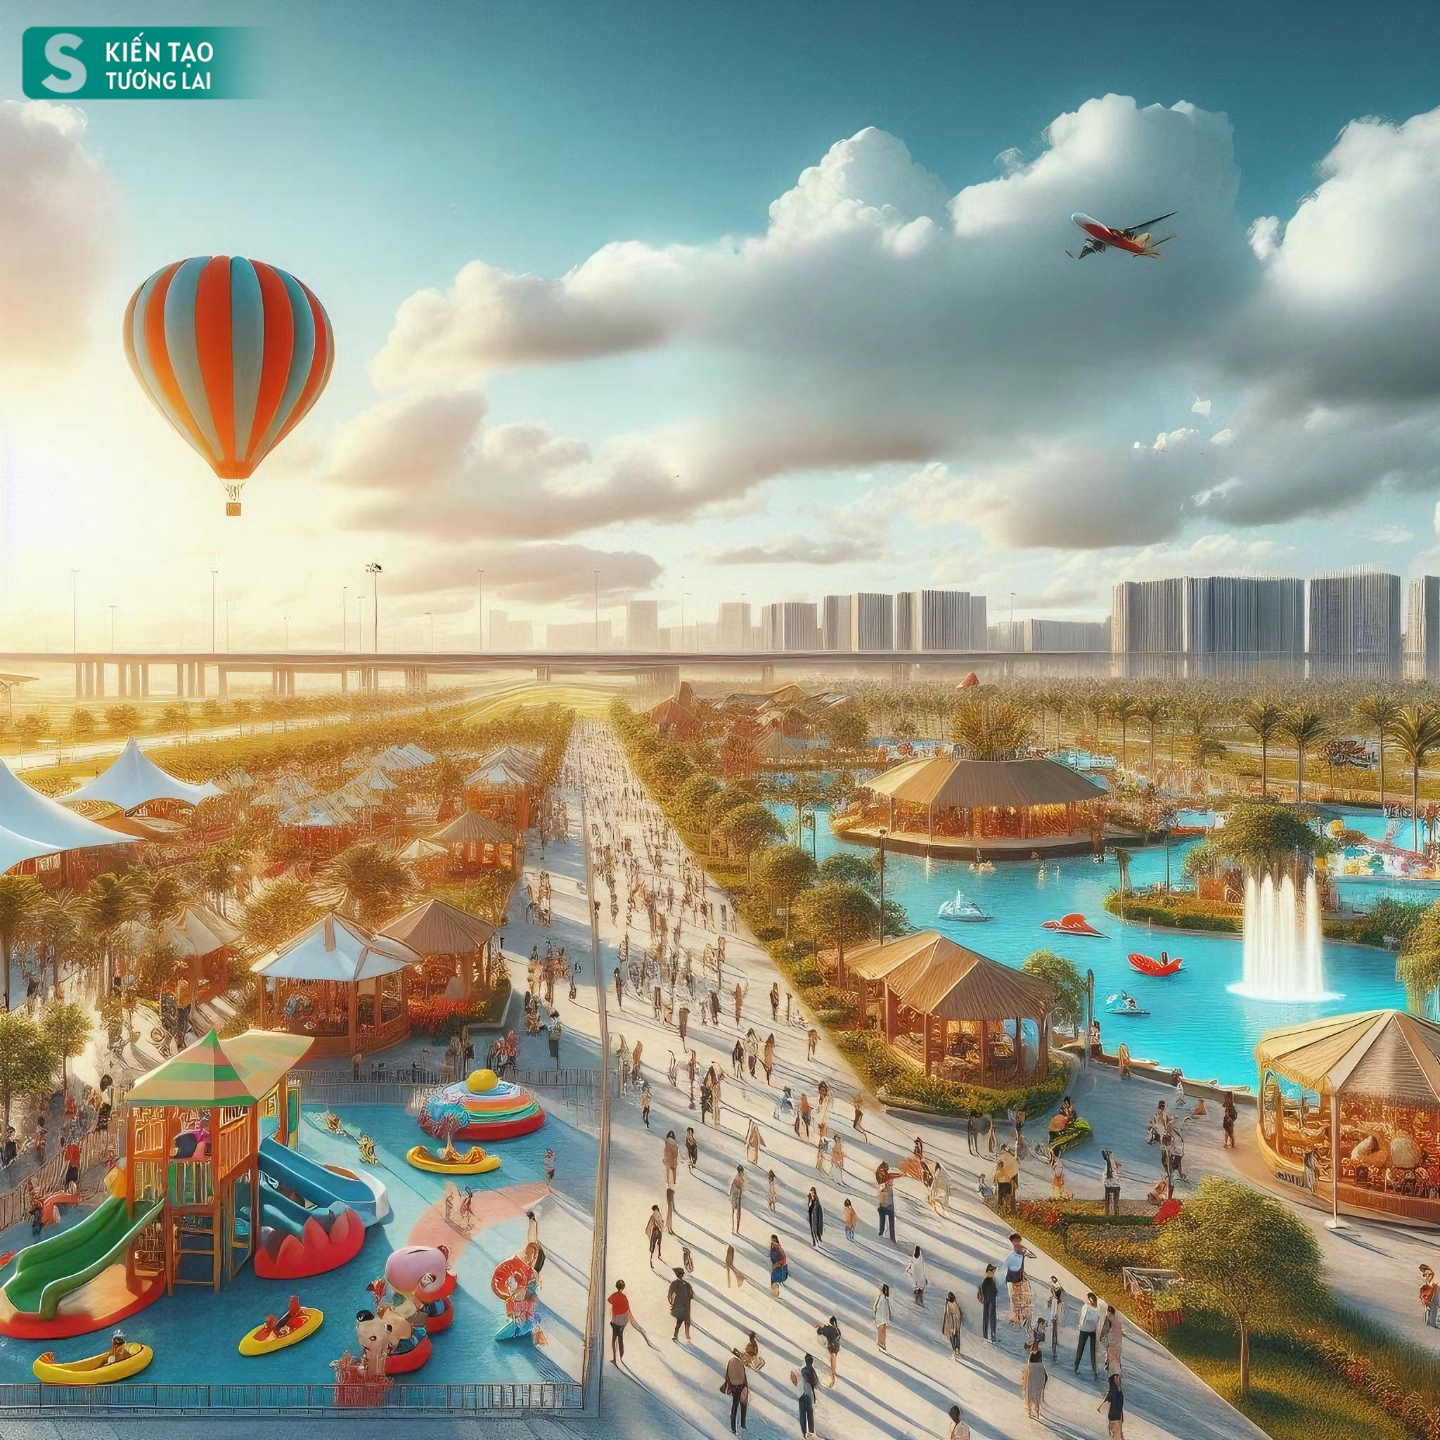 Choáng ngợp với viễn cảnh hiện đại của thành phố mới cạnh sân bay 16 tỷ USD lớn nhất Việt Nam- Ảnh 10.